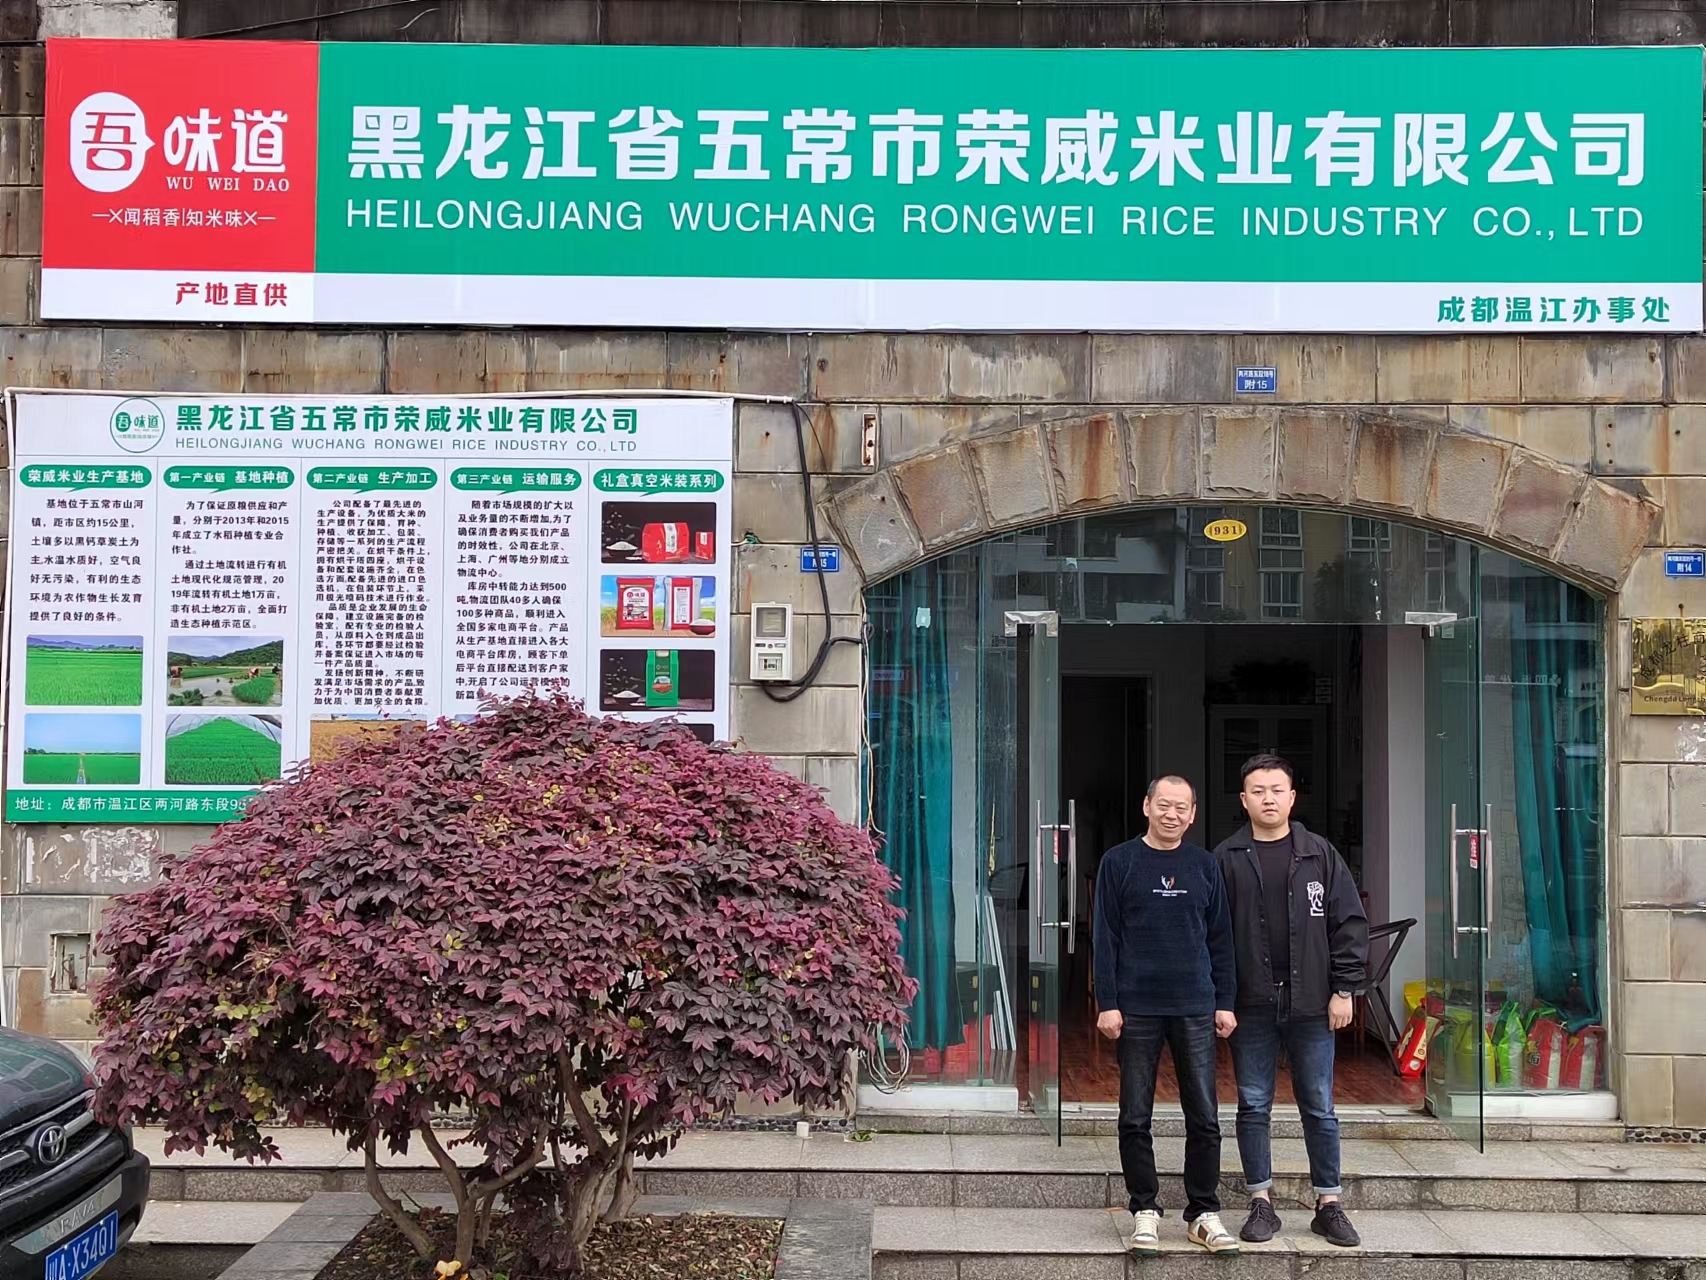 熱烈慶祝我公司黑龍江省五常市榮威米業有限公司辦事處入駐成都溫江！